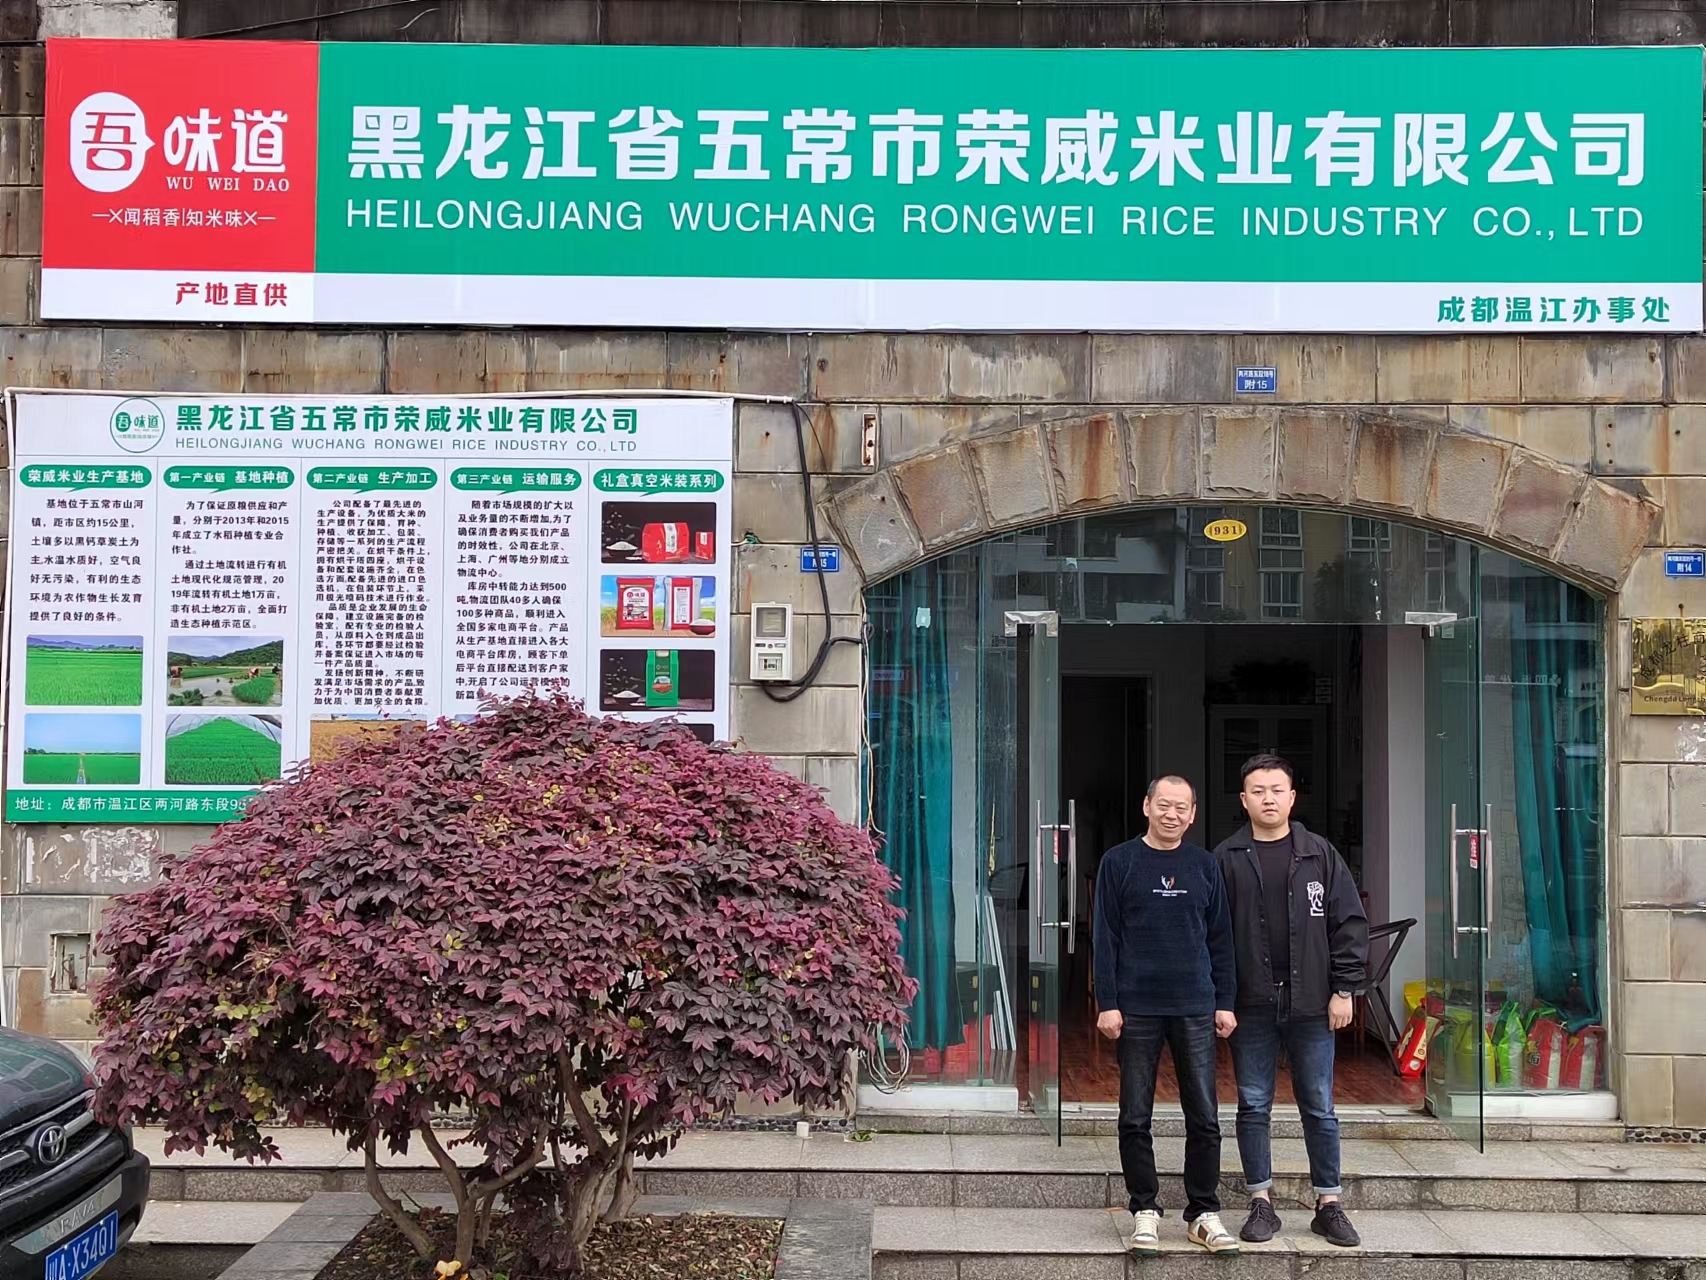 熱烈慶祝我公司黑龍江省五常市榮威米業有限公司辦事處入駐成都溫江！